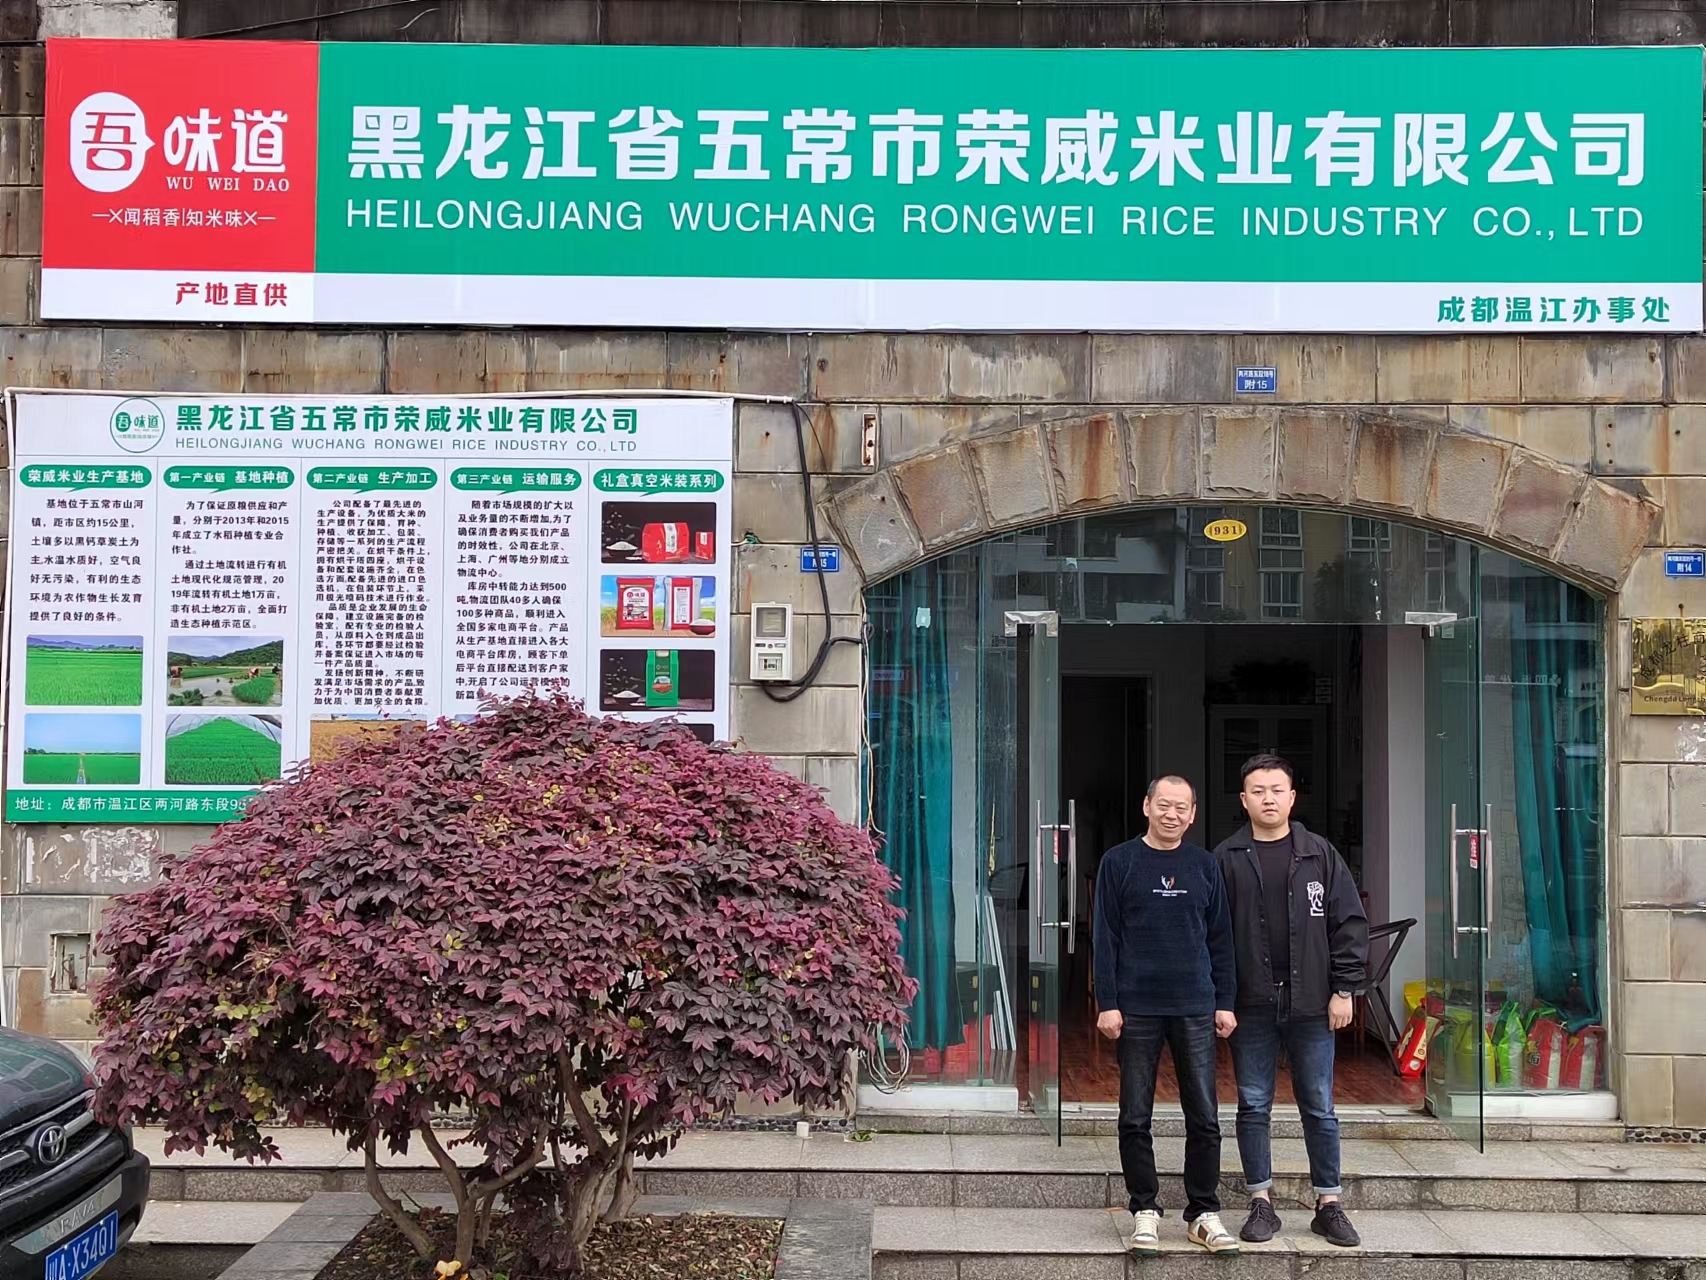 熱烈慶祝我公司黑龍江省五常市榮威米業有限公司辦事處入駐成都溫江！